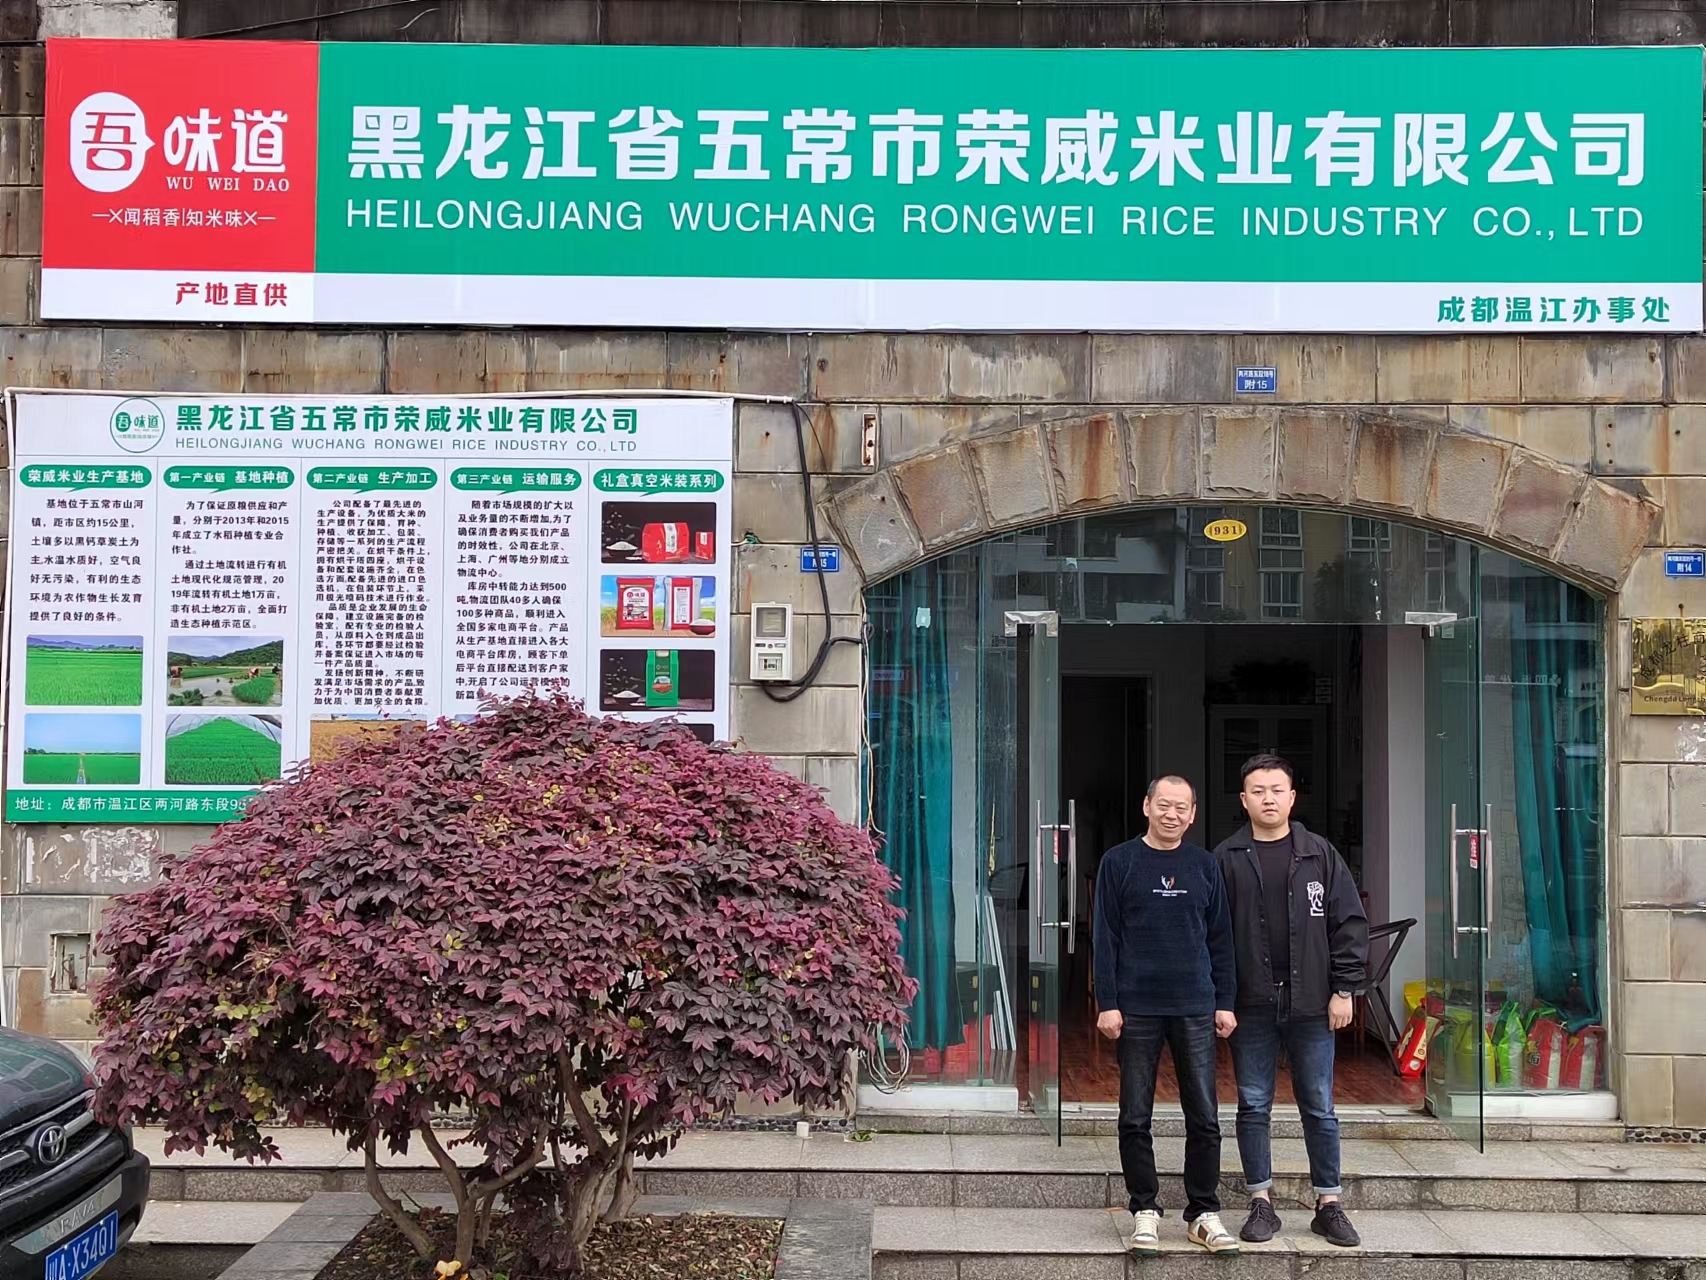 熱烈慶祝我公司黑龍江省五常市榮威米業有限公司辦事處入駐成都溫江！